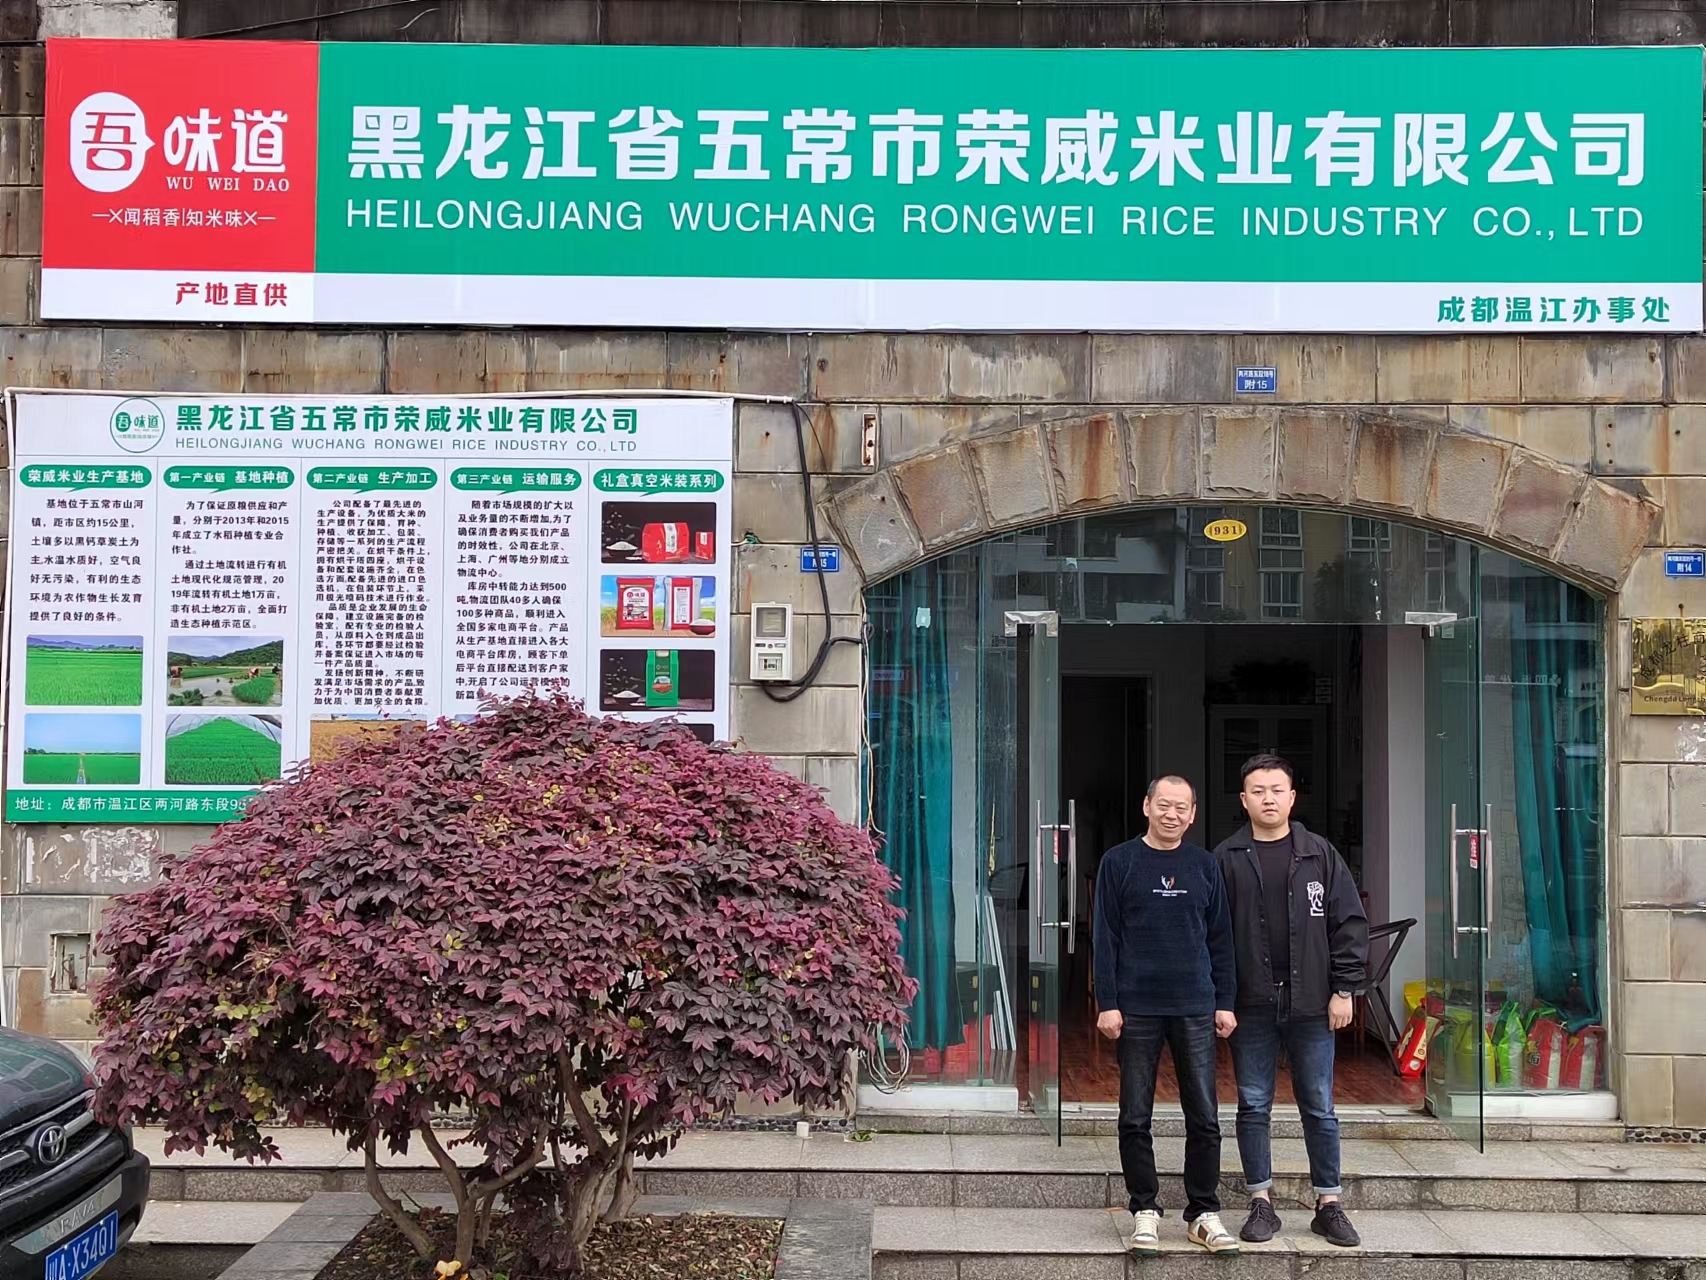 熱烈慶祝我公司黑龍江省五常市榮威米業有限公司辦事處入駐成都溫江！